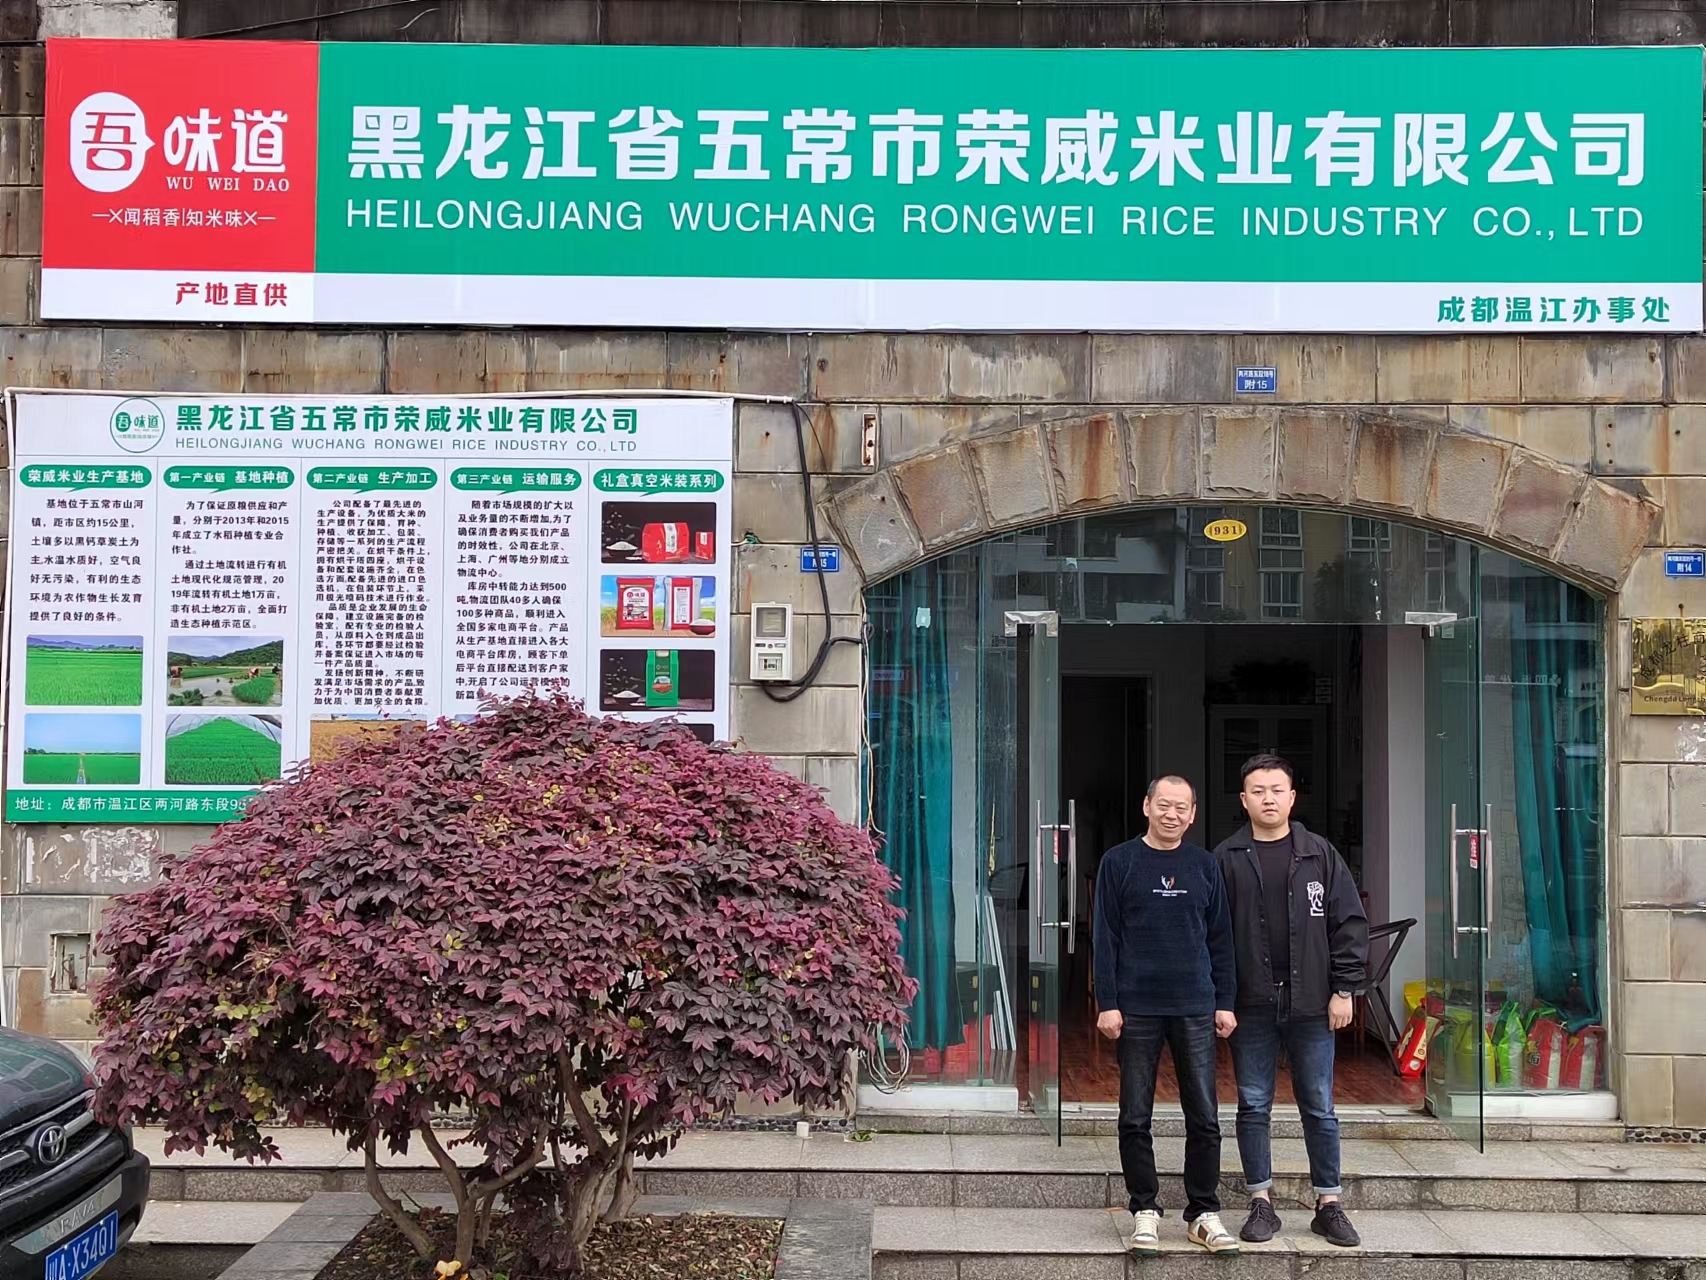 熱烈慶祝我公司黑龍江省五常市榮威米業有限公司辦事處入駐成都溫江！